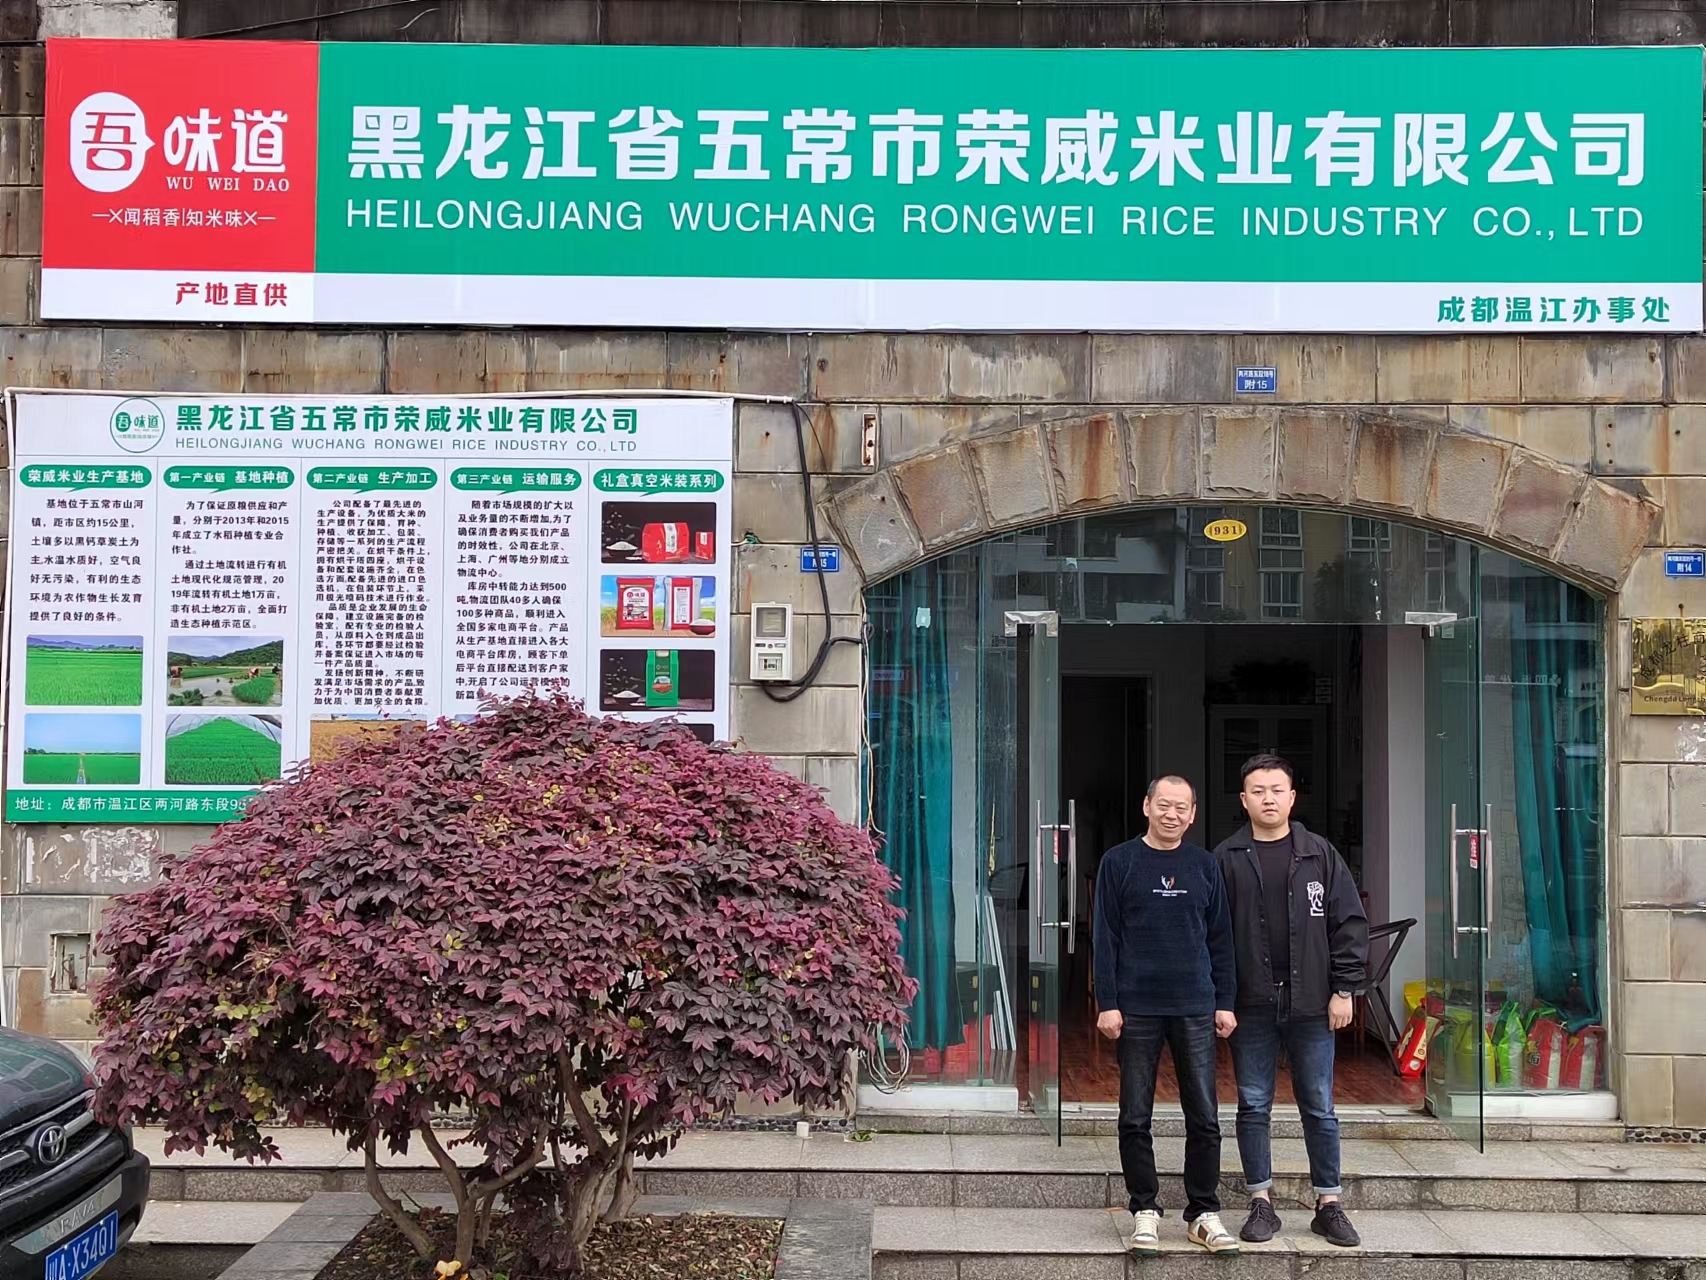 熱烈慶祝我公司黑龍江省五常市榮威米業有限公司辦事處入駐成都溫江！